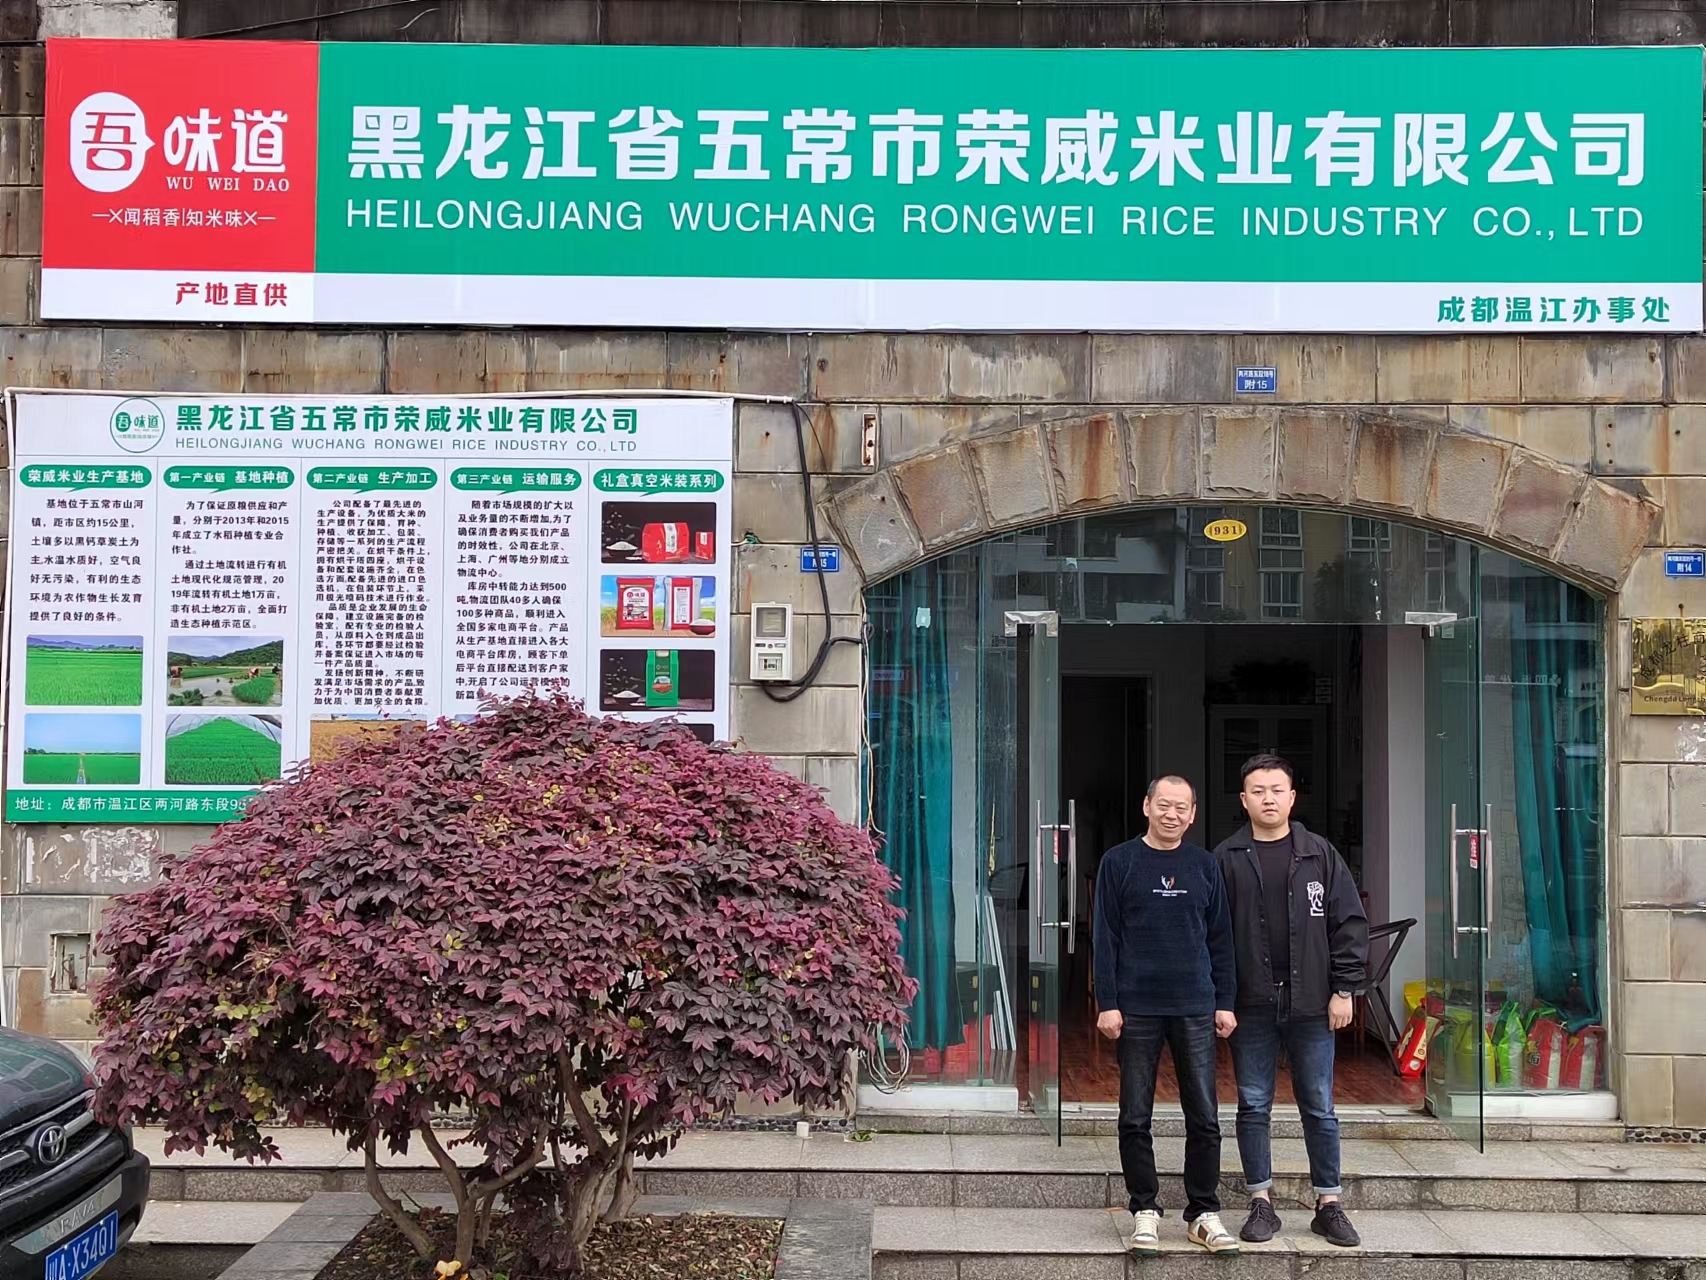 熱烈慶祝我公司黑龍江省五常市榮威米業有限公司辦事處入駐成都溫江！